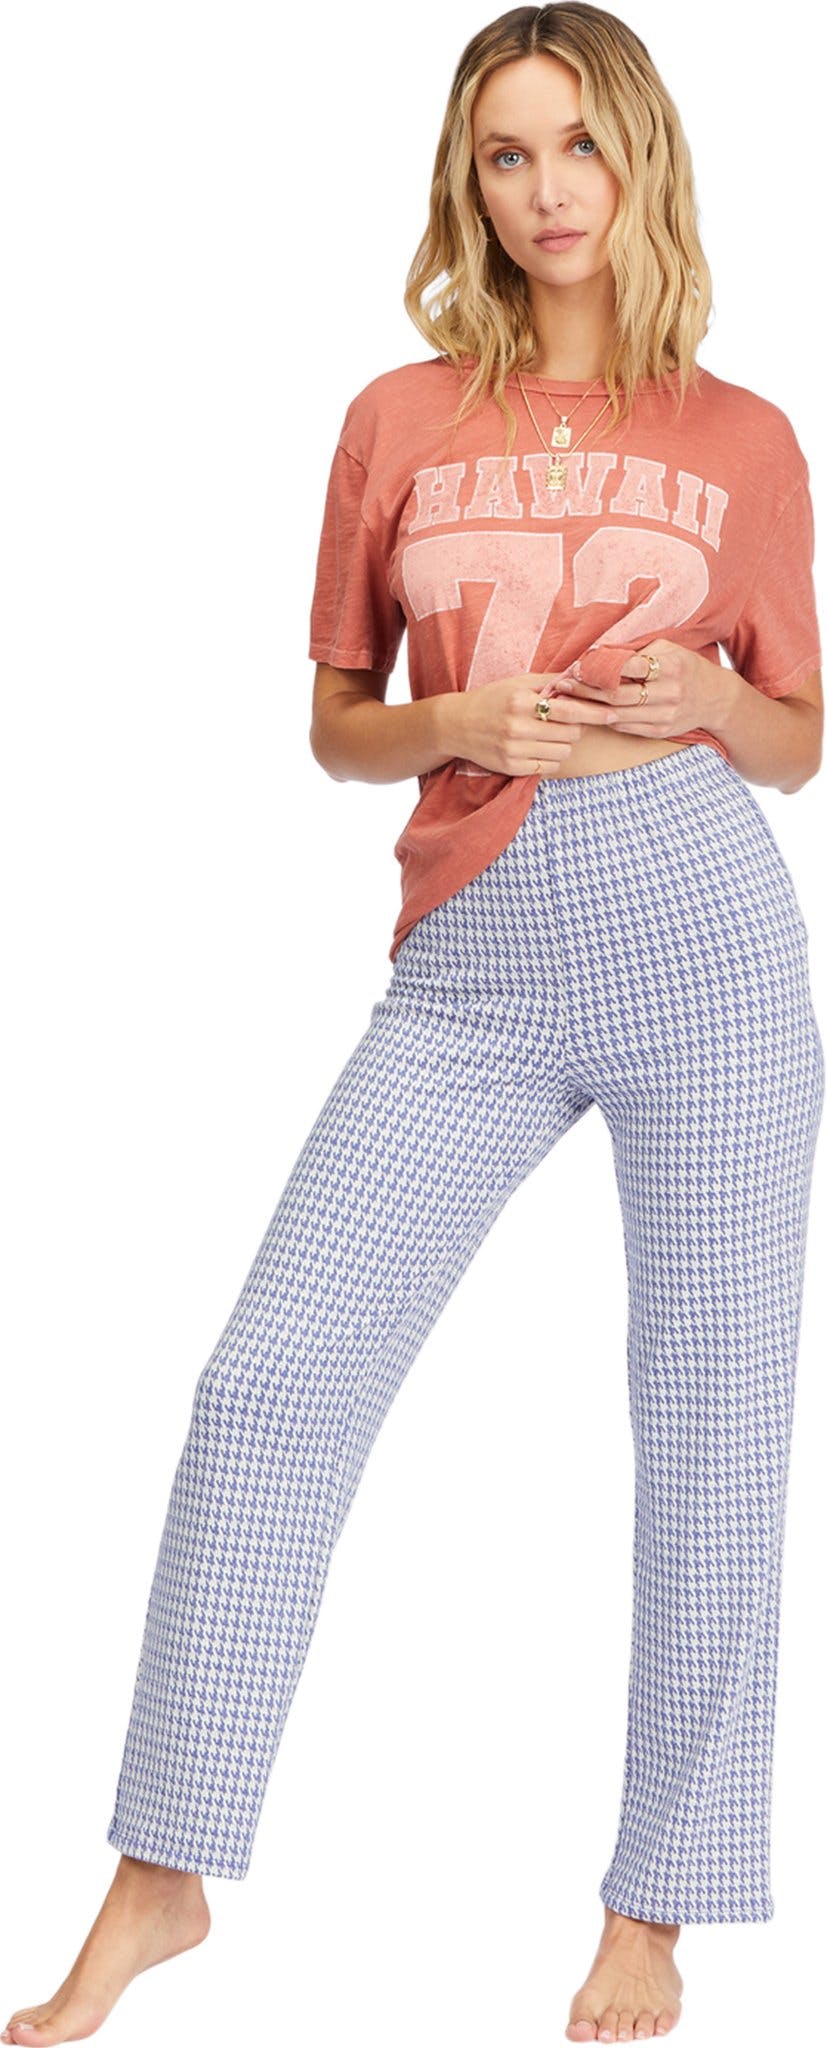 Numéro de l'image de la galerie de produits 1 pour le produit Pantalon en tricot Keep It Straight - Femme